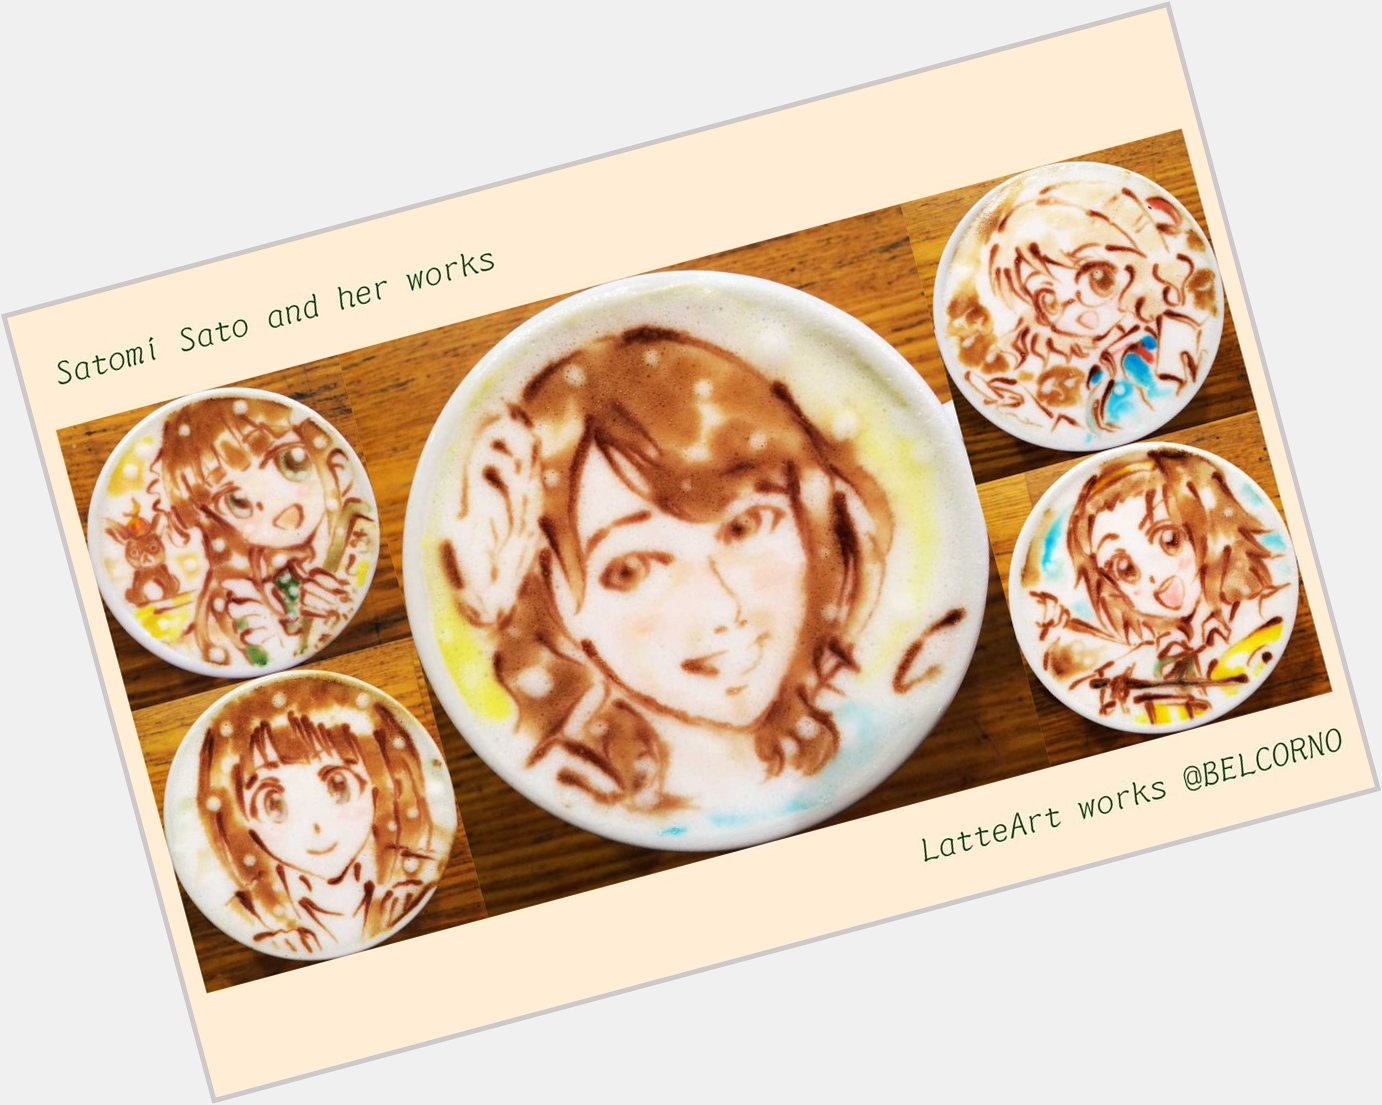              LatteArt Satomi Sato                    Happy Birthday!   